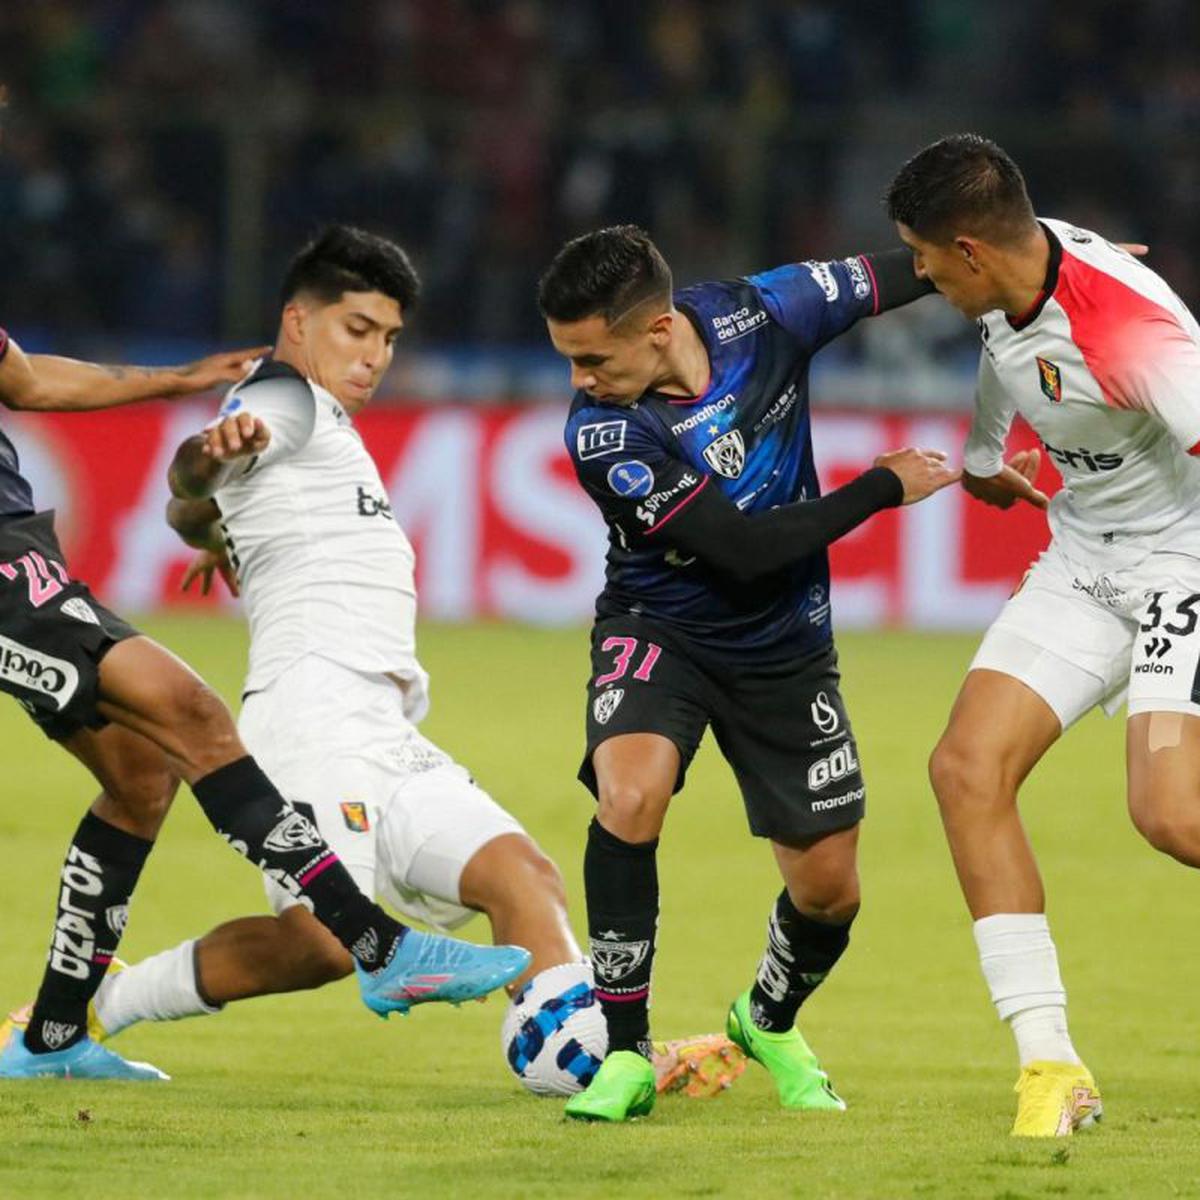 Cuatro aspectos clave que los clubes peruanos deben imitar de Independiente  del Valle, finalista de Copa Sudamericana 2022, Melgar, RMMD DTCC, DEPORTE-TOTAL